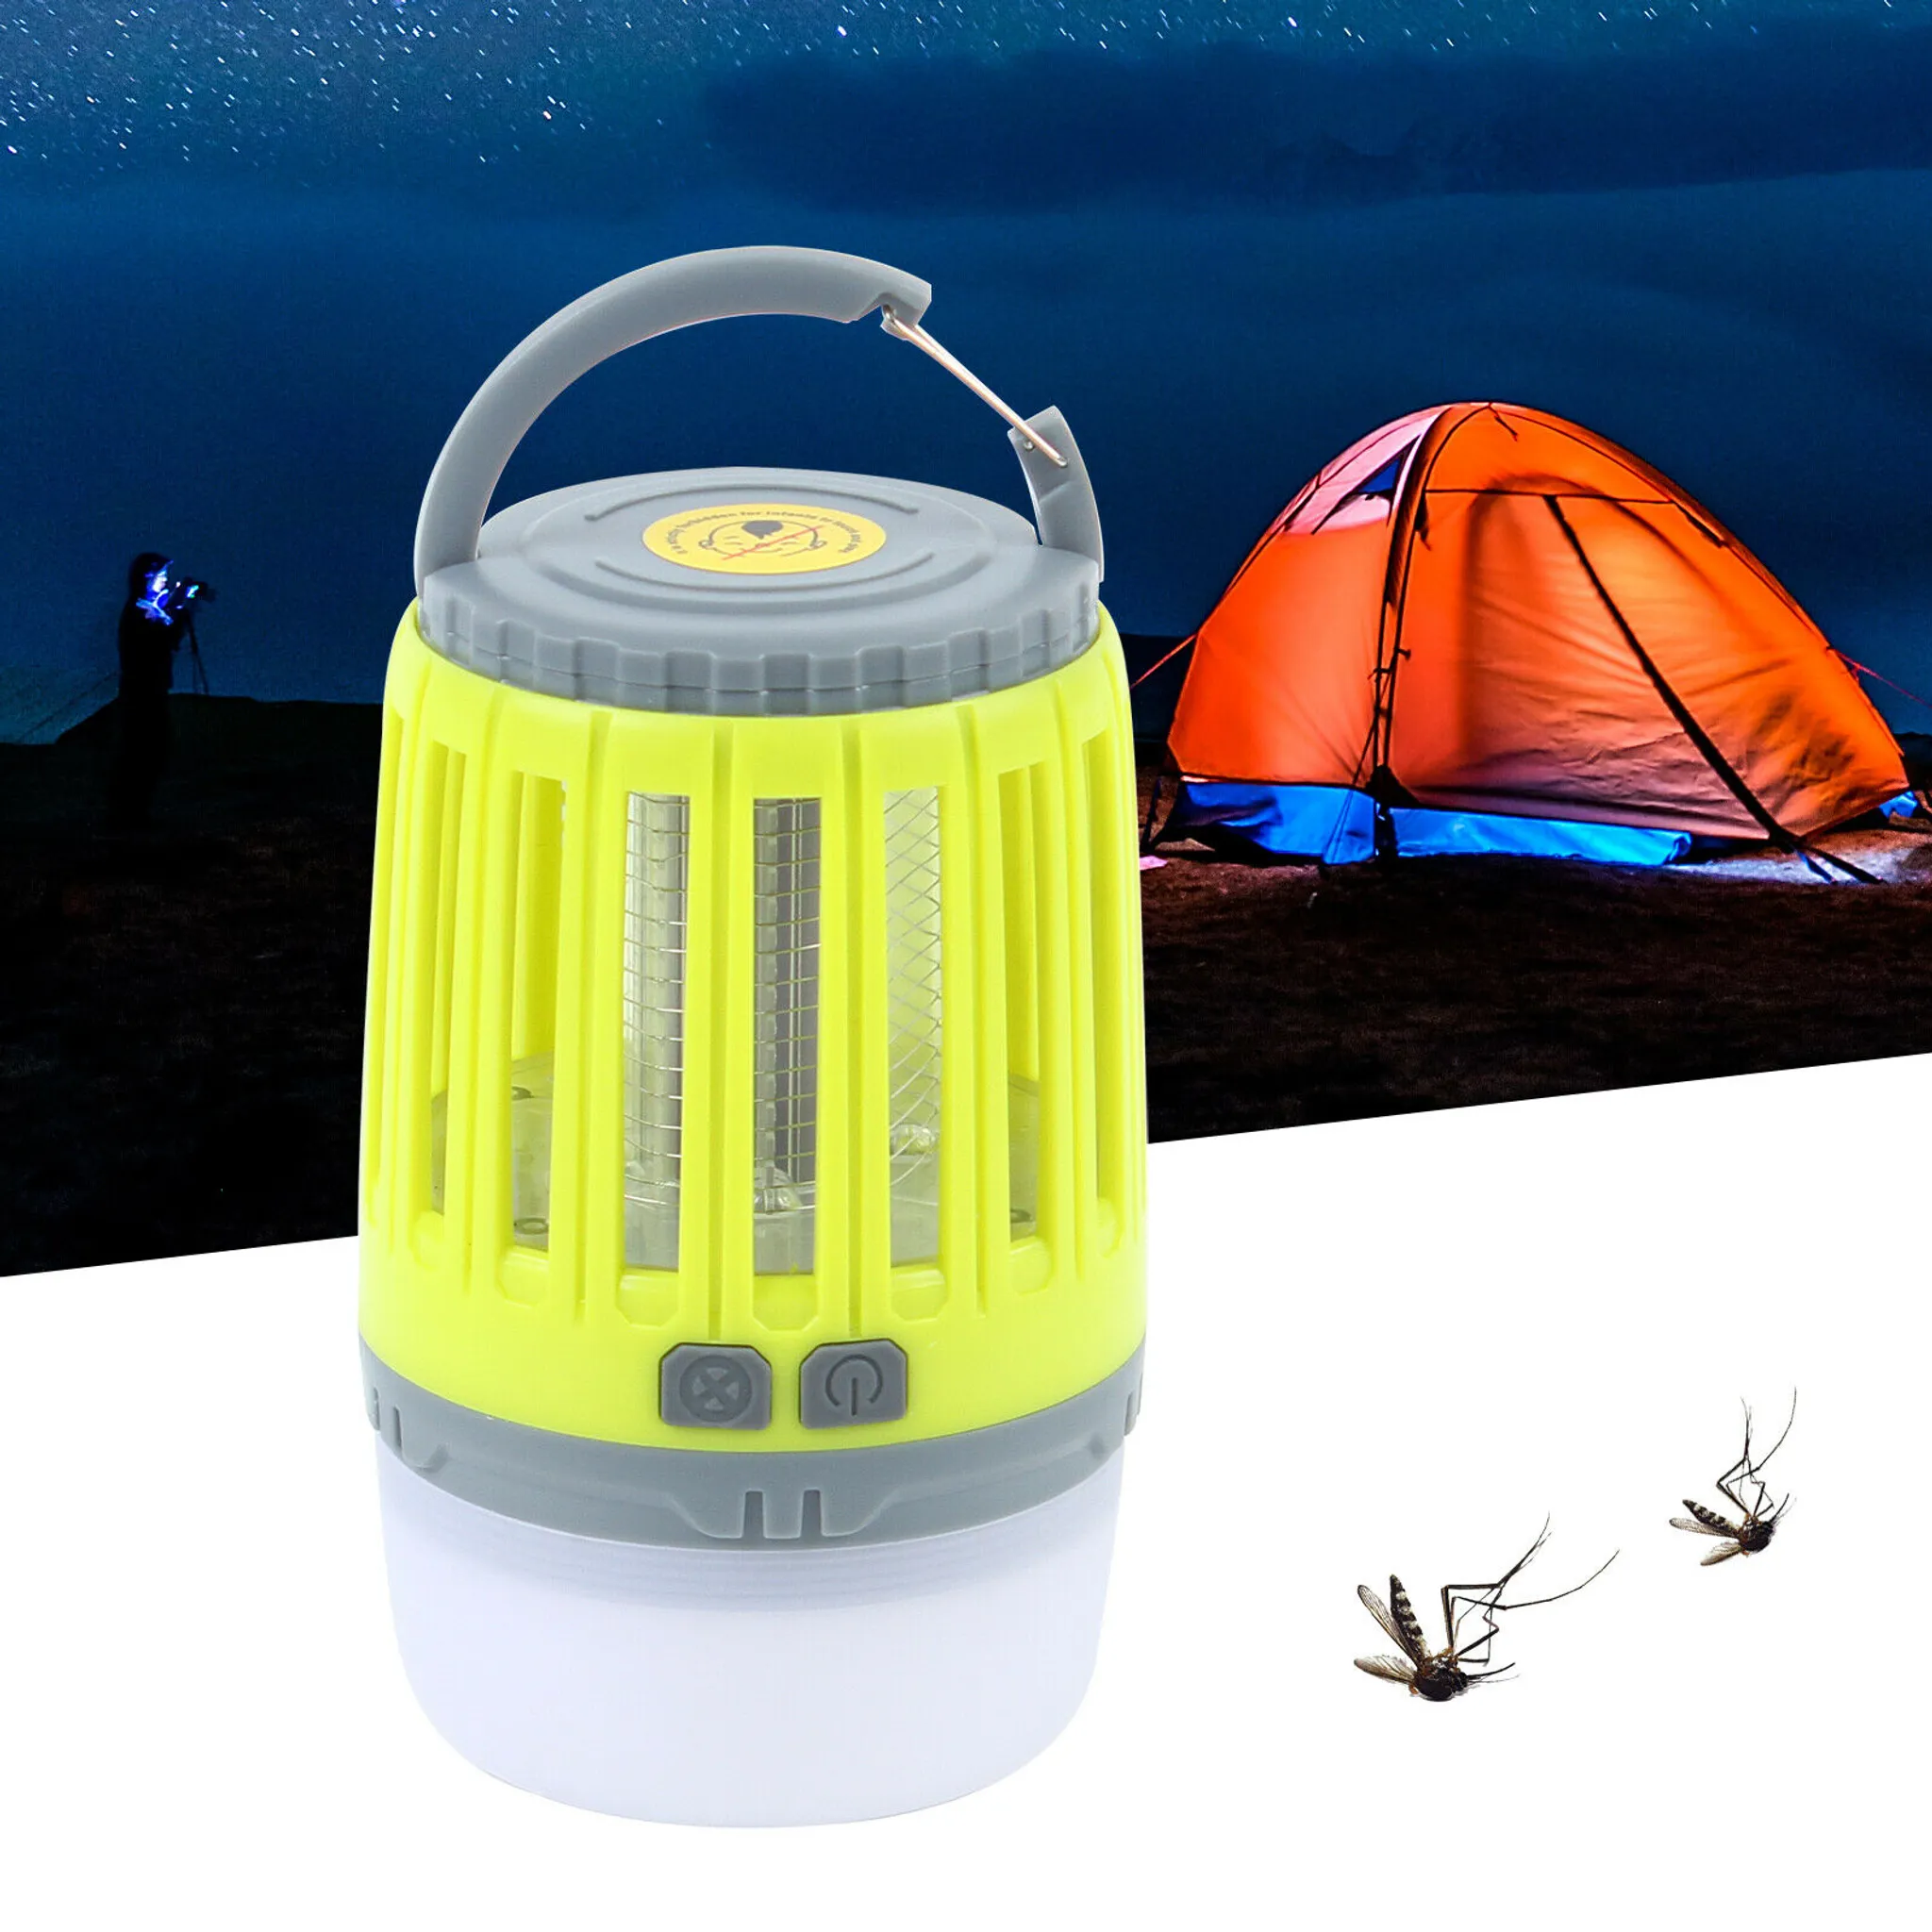 LED Campinglampe 3 in1 Mückenvernichter LED